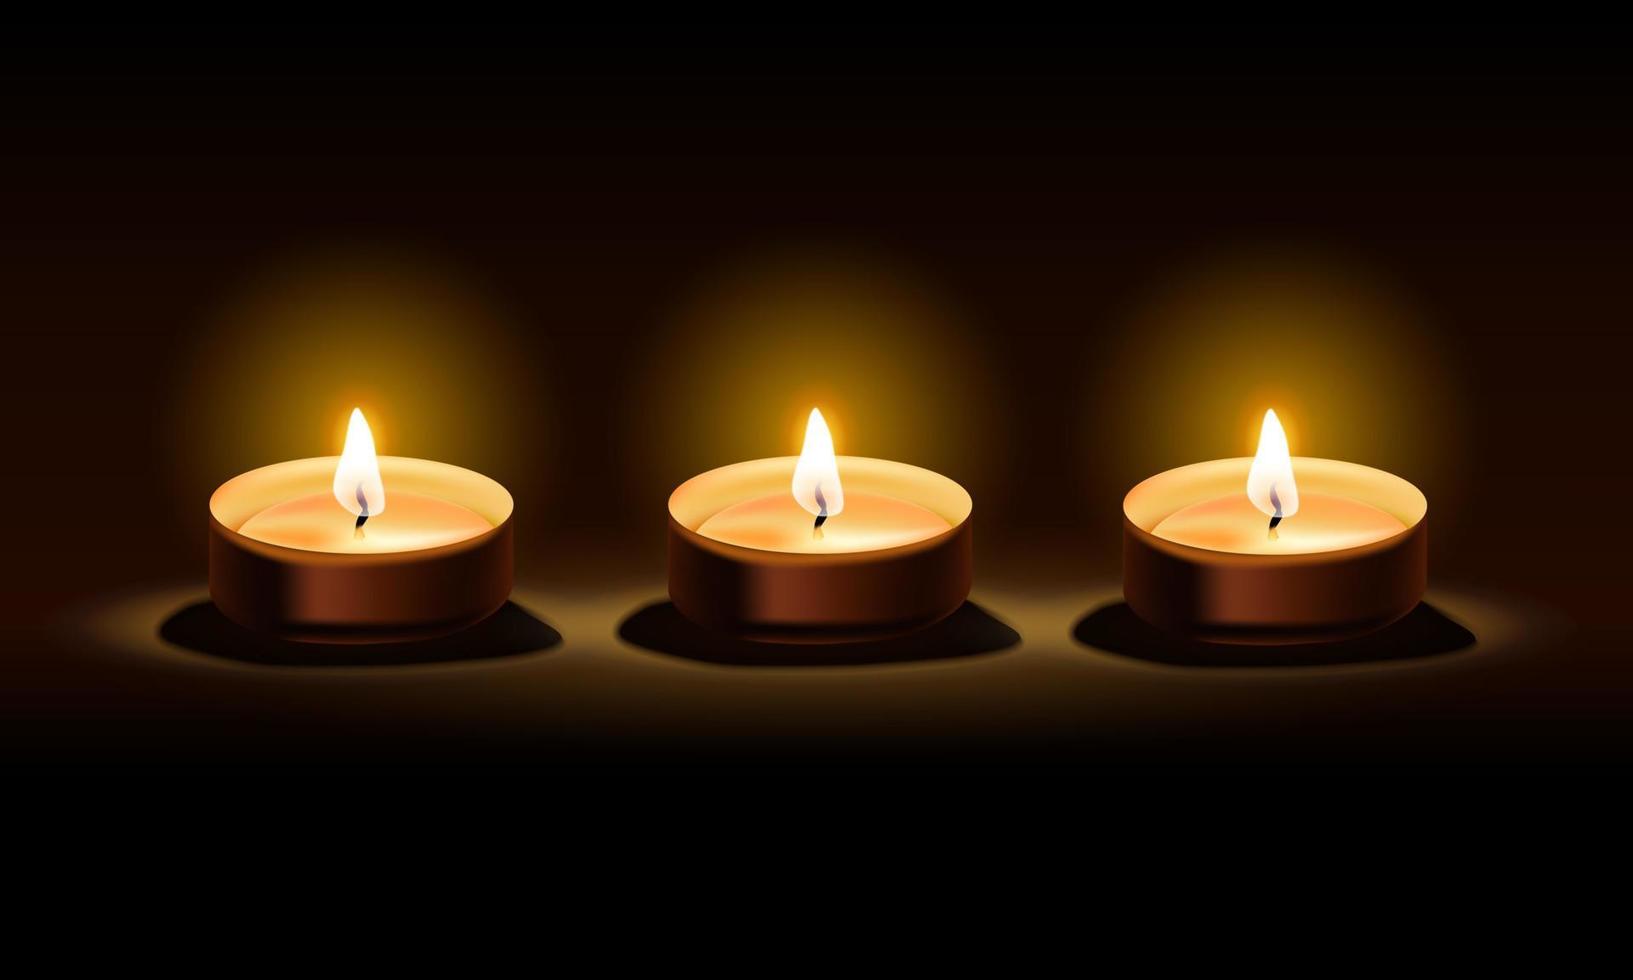 drei Kerzen in einem dunklen schwarzen Hintergrund für Gelassenheit, Vektorillustration vektor